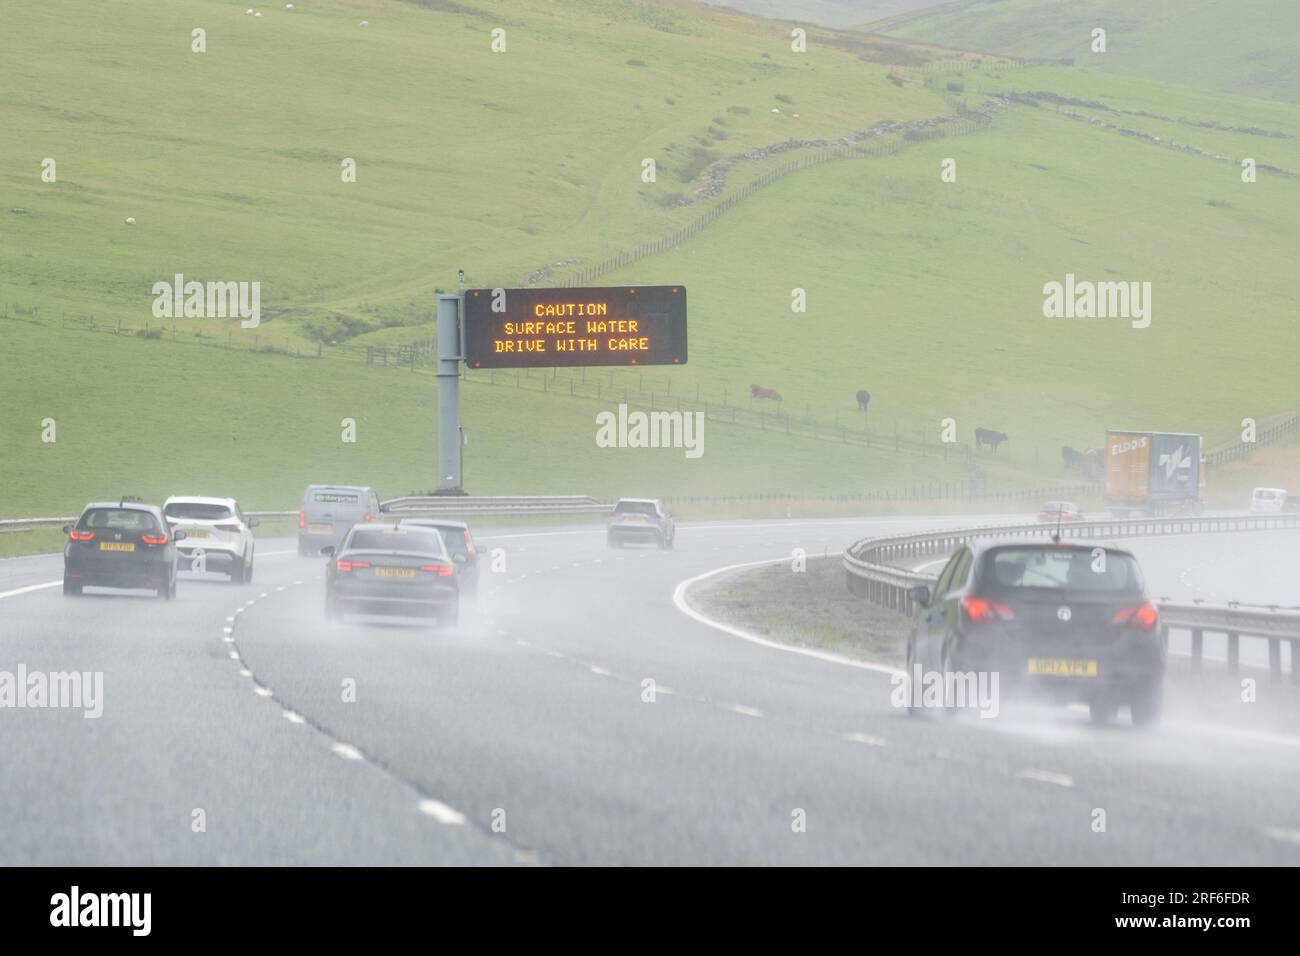 Oberflächenwasser auf der britischen Autobahn - Vorsicht Oberflächenwasser fahren mit Achtung Schild - Schottland, Großbritannien Stockfoto